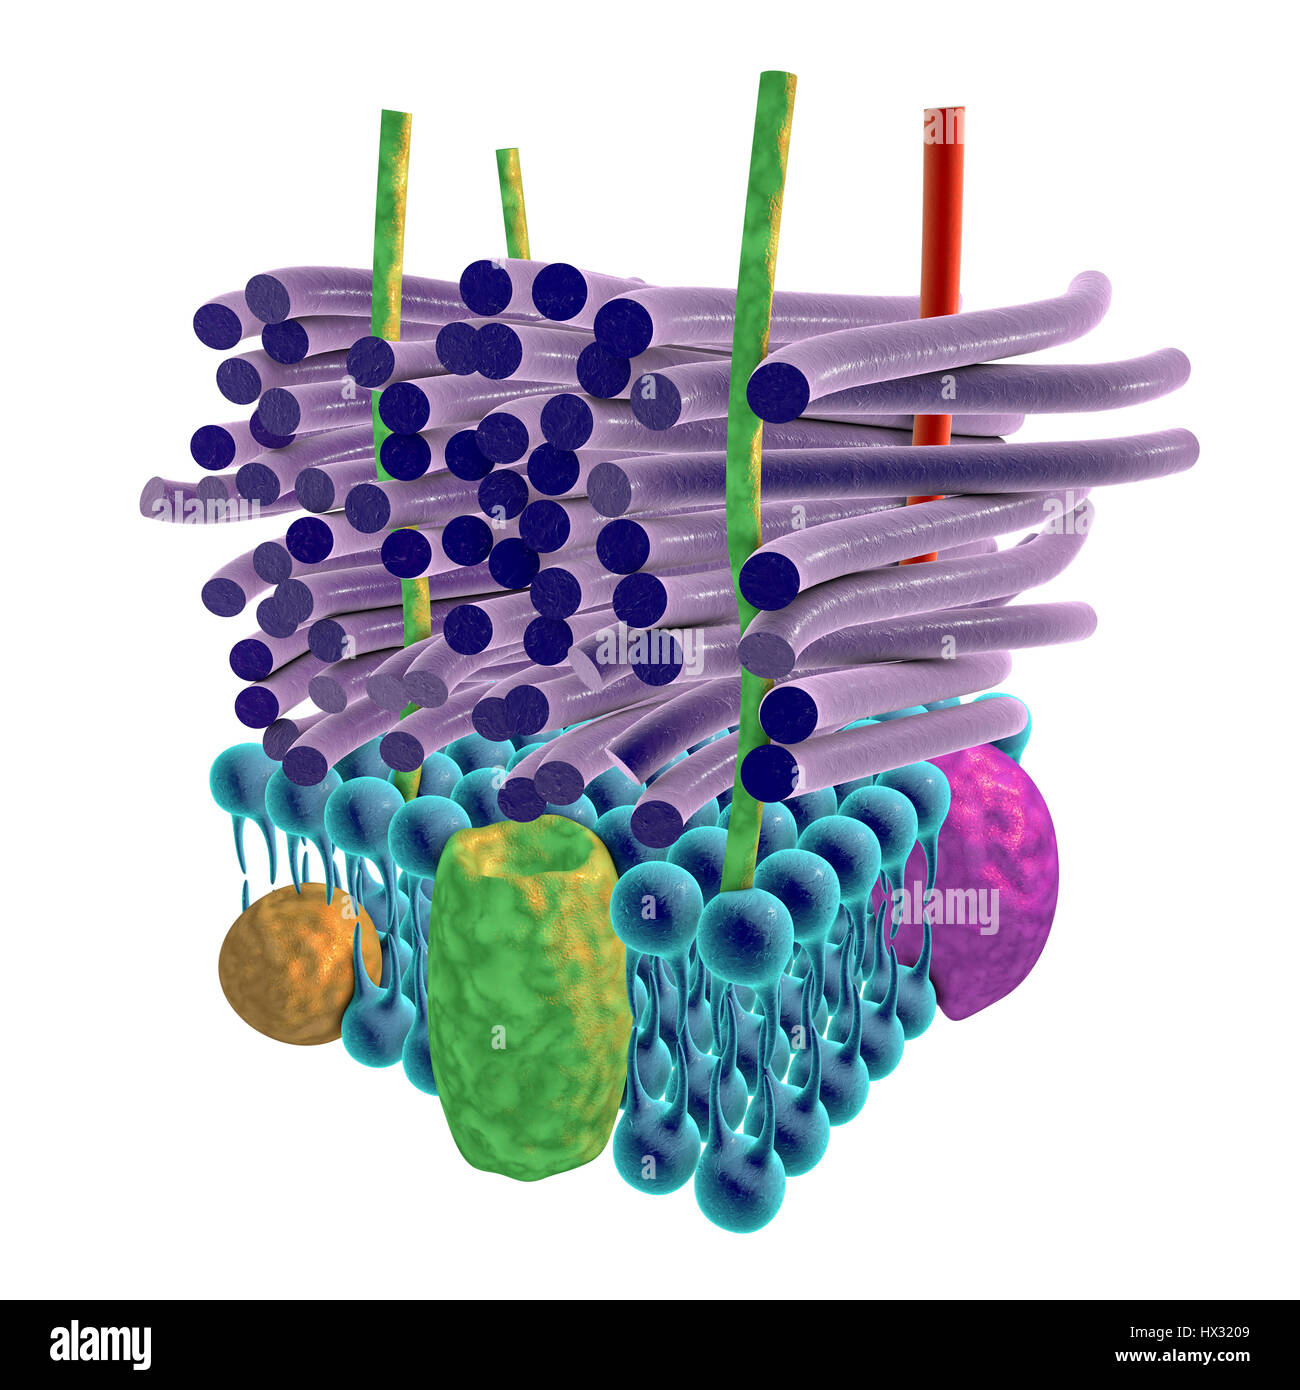 Grampositiven bakteriellen Zellwand, Artwork. Die horizontalen Schichten umfassen eine Plasmamembran (blau), die transmembranen Proteine (grün, gelb und lila) enthalten. Darüber befindet sich eine dicke Peptidoglycan Schicht (lila Stäbe), die durch Teichoic Säuren (rote Stangen) und Lipoteichoic Säuren (grünen Stangen) zusammengehalten wird. Dies ist eine Gram-positiven Zellwand bezeichnet, weil die dicke Schicht des Peptidoglycan behält der Gram-Färbung, mit denen mikrobielles Leben identifiziert. Stockfoto